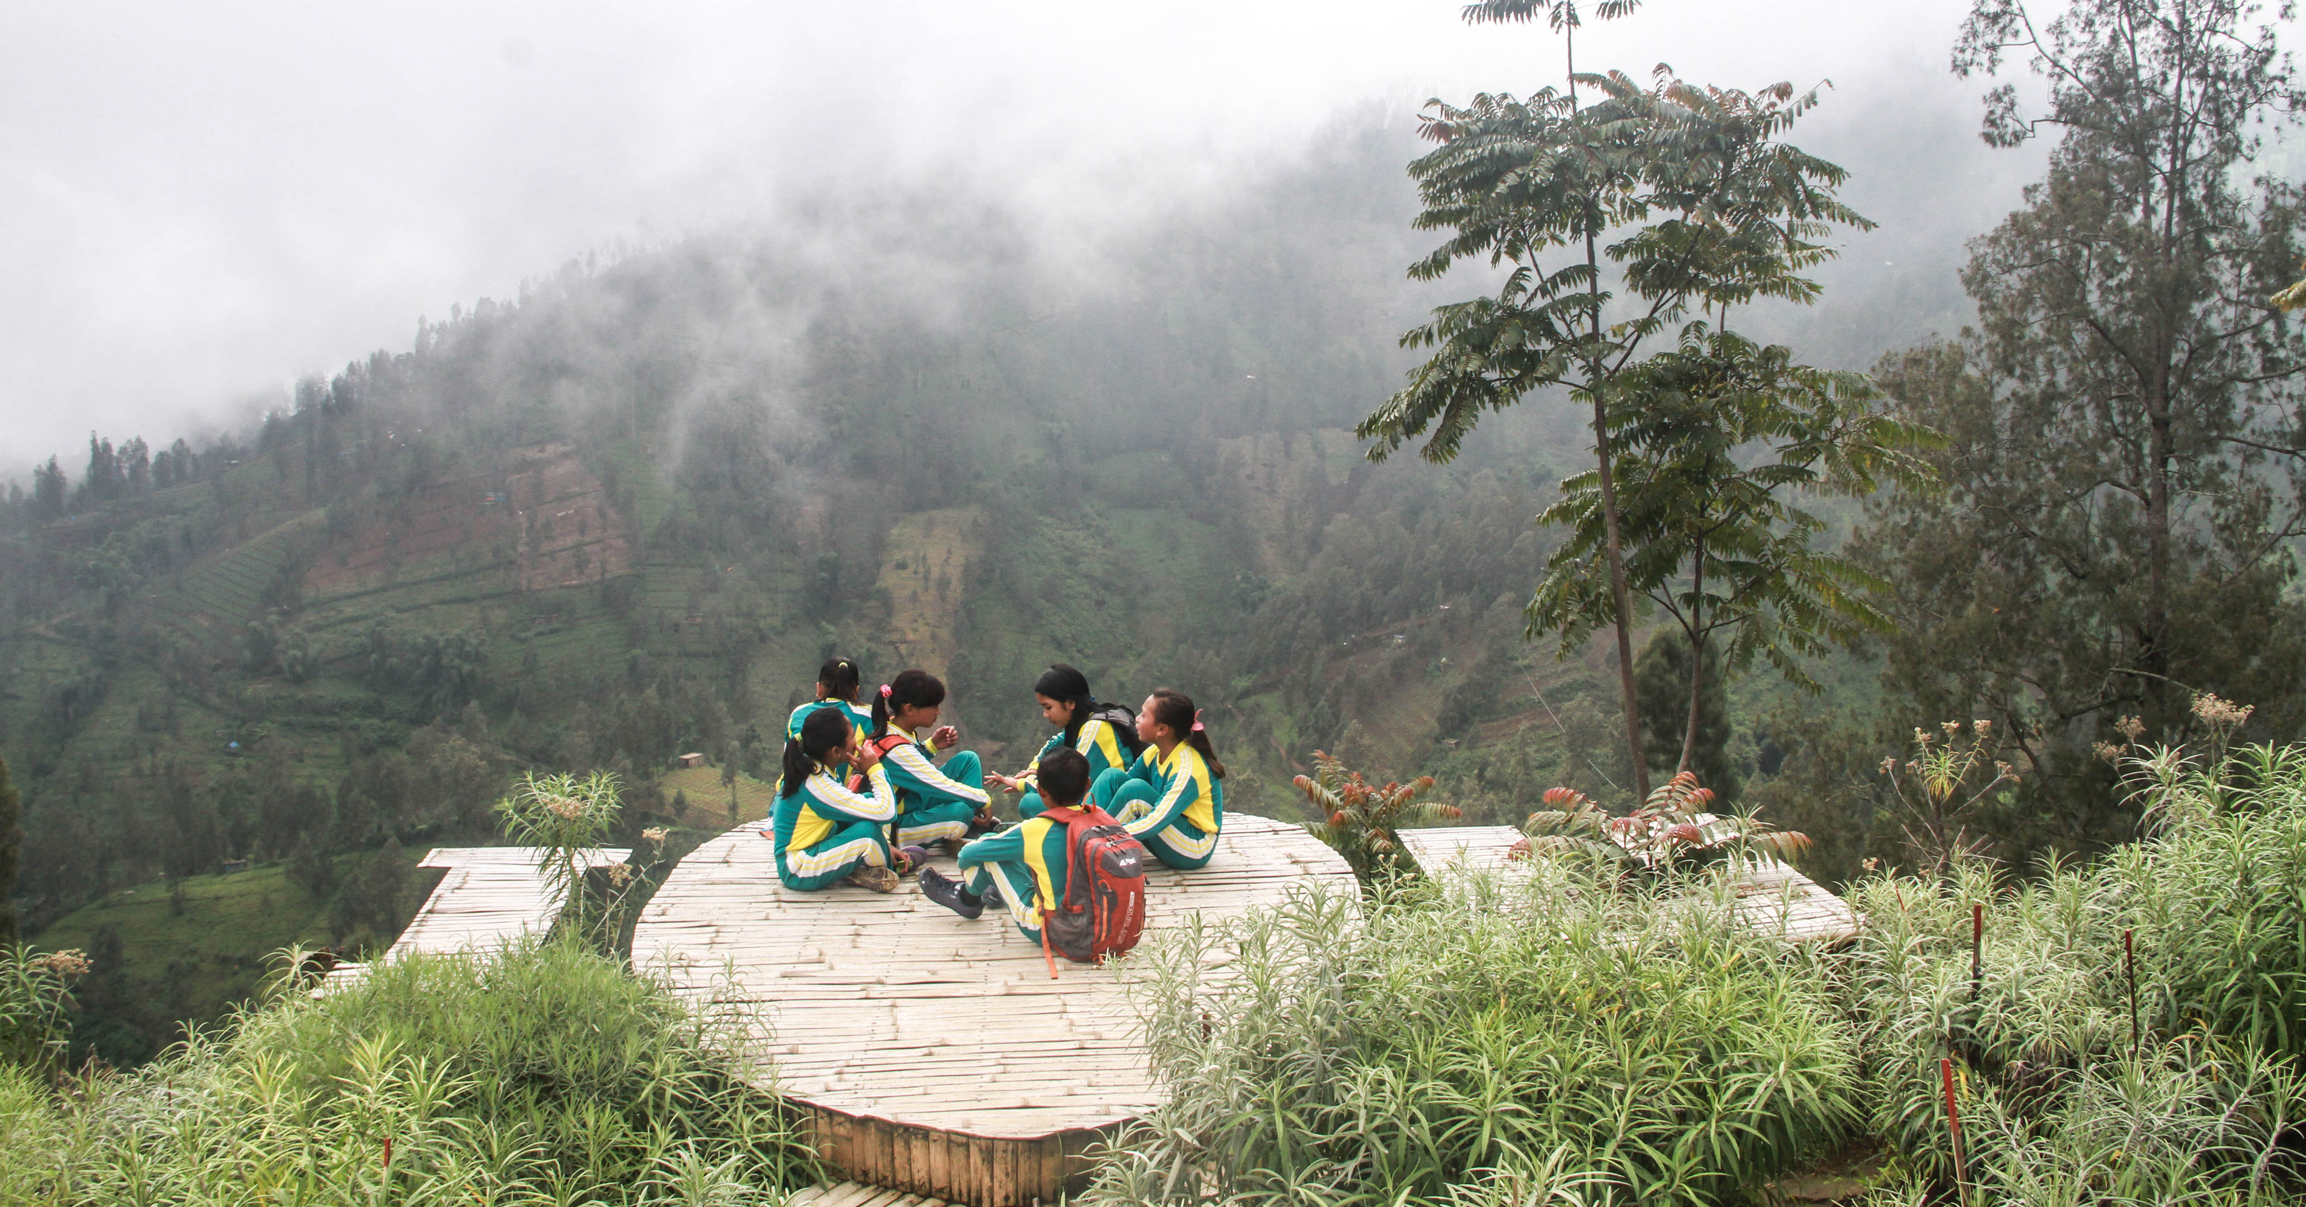  Siswa SDN saat duduk sembari bercerita di salah satu spot foto di Taman Wisata Bunga Edelweis yang dikelola oleh kelompok Tani Hulun Hyang | Foto: Falahi Mubarok/ Mongabay Indonesia 